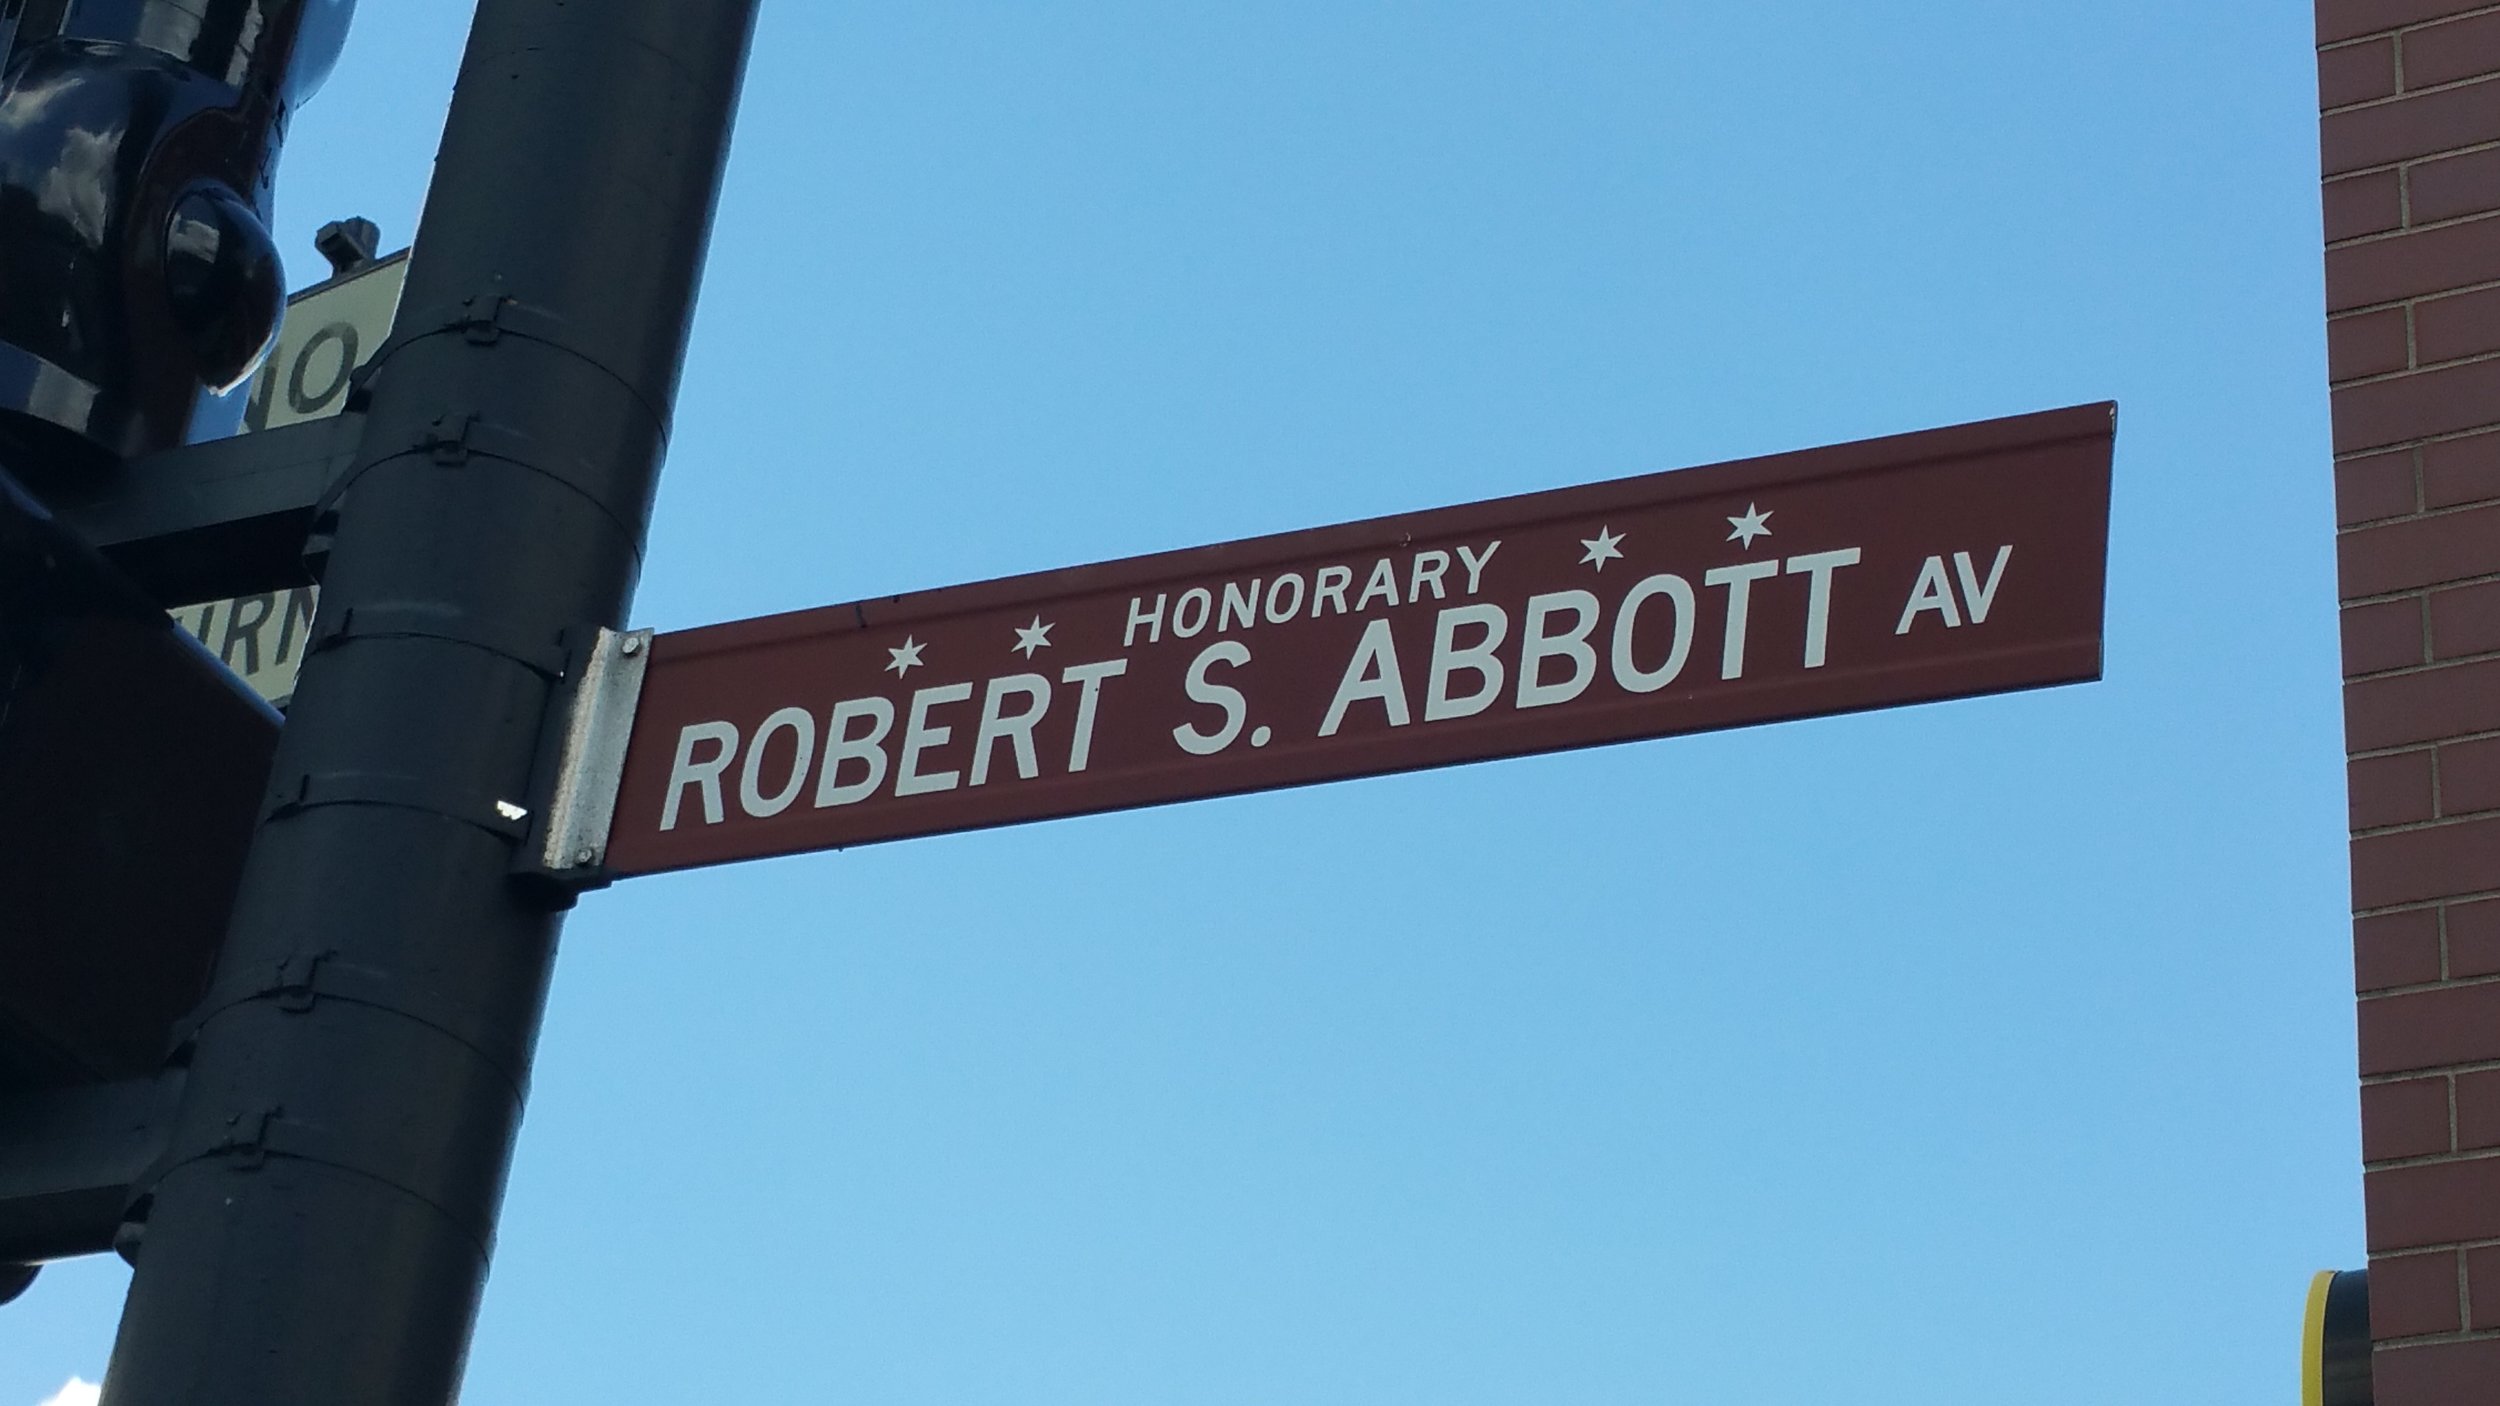 Robert Abbott - Chicago Defender newspaper founder - Honorary Chicago